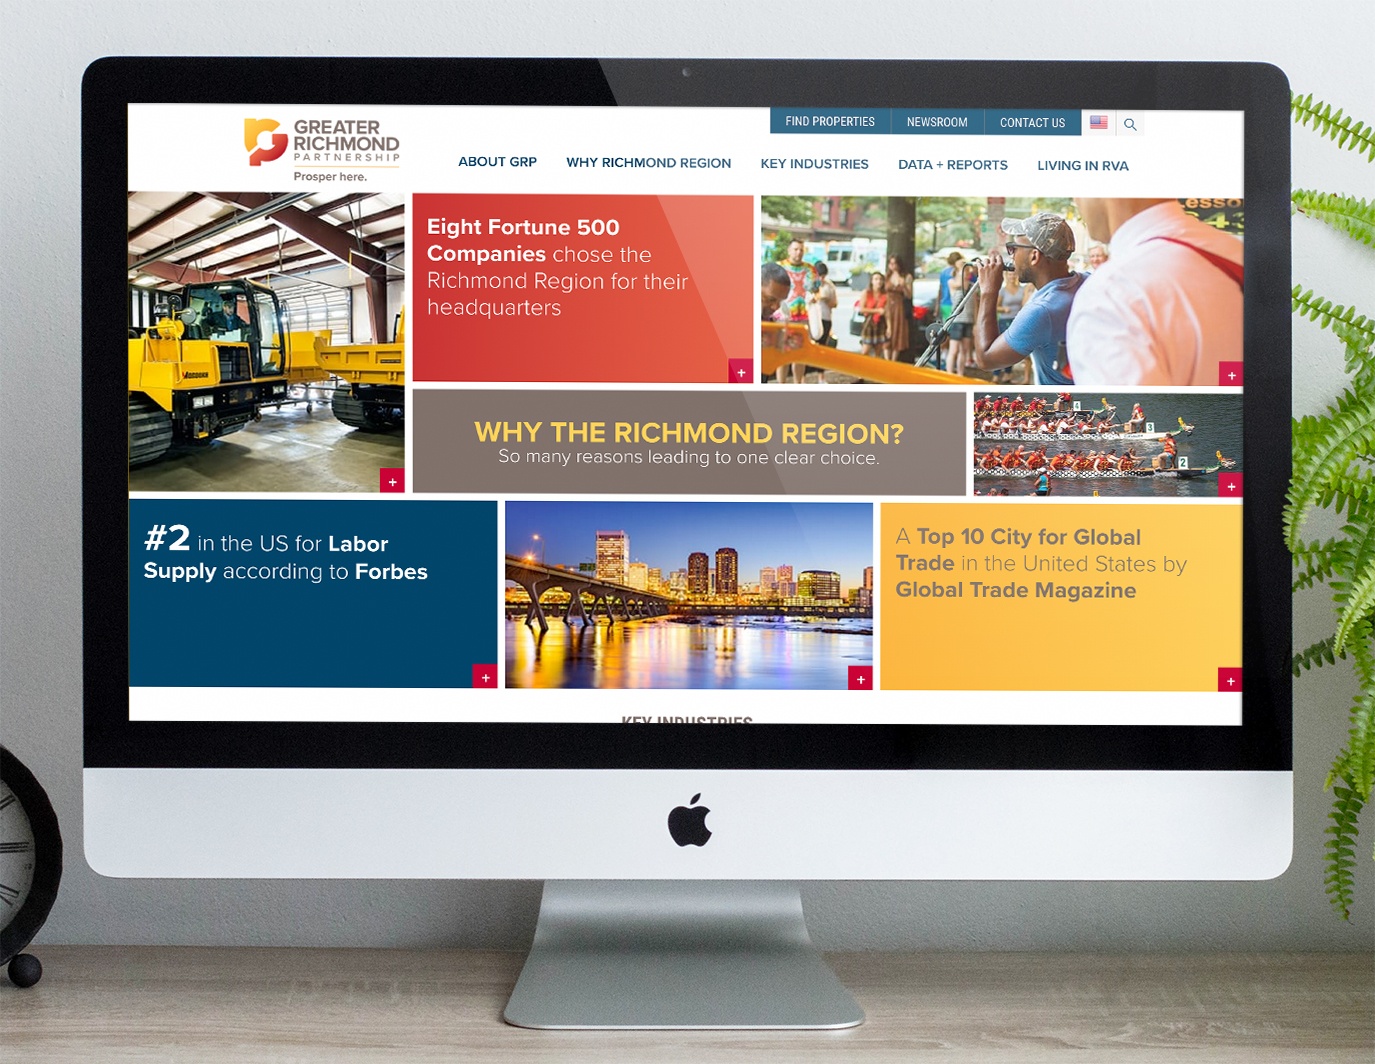 Greater Richmond Partnership website as shown on a desktop computer